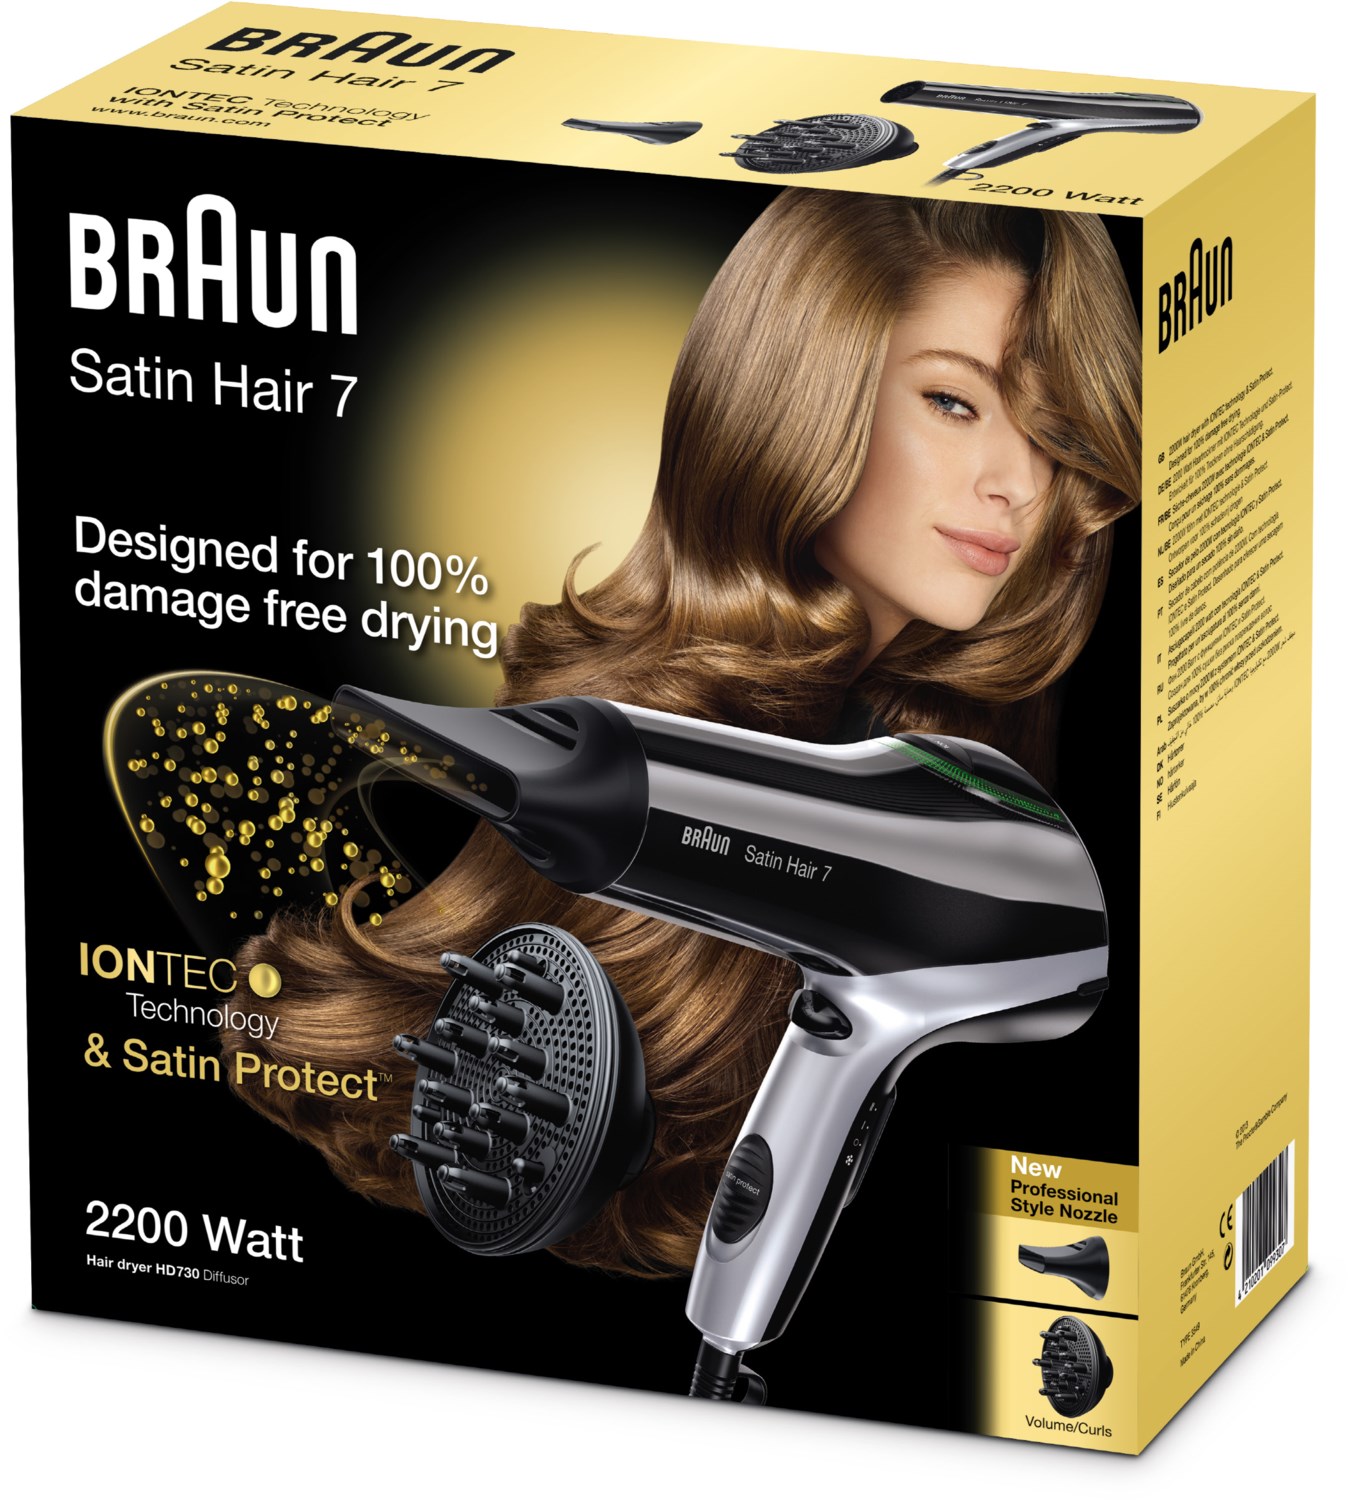 HD 730 Diffusor Satin Hair 7 Haartrockner von Braun